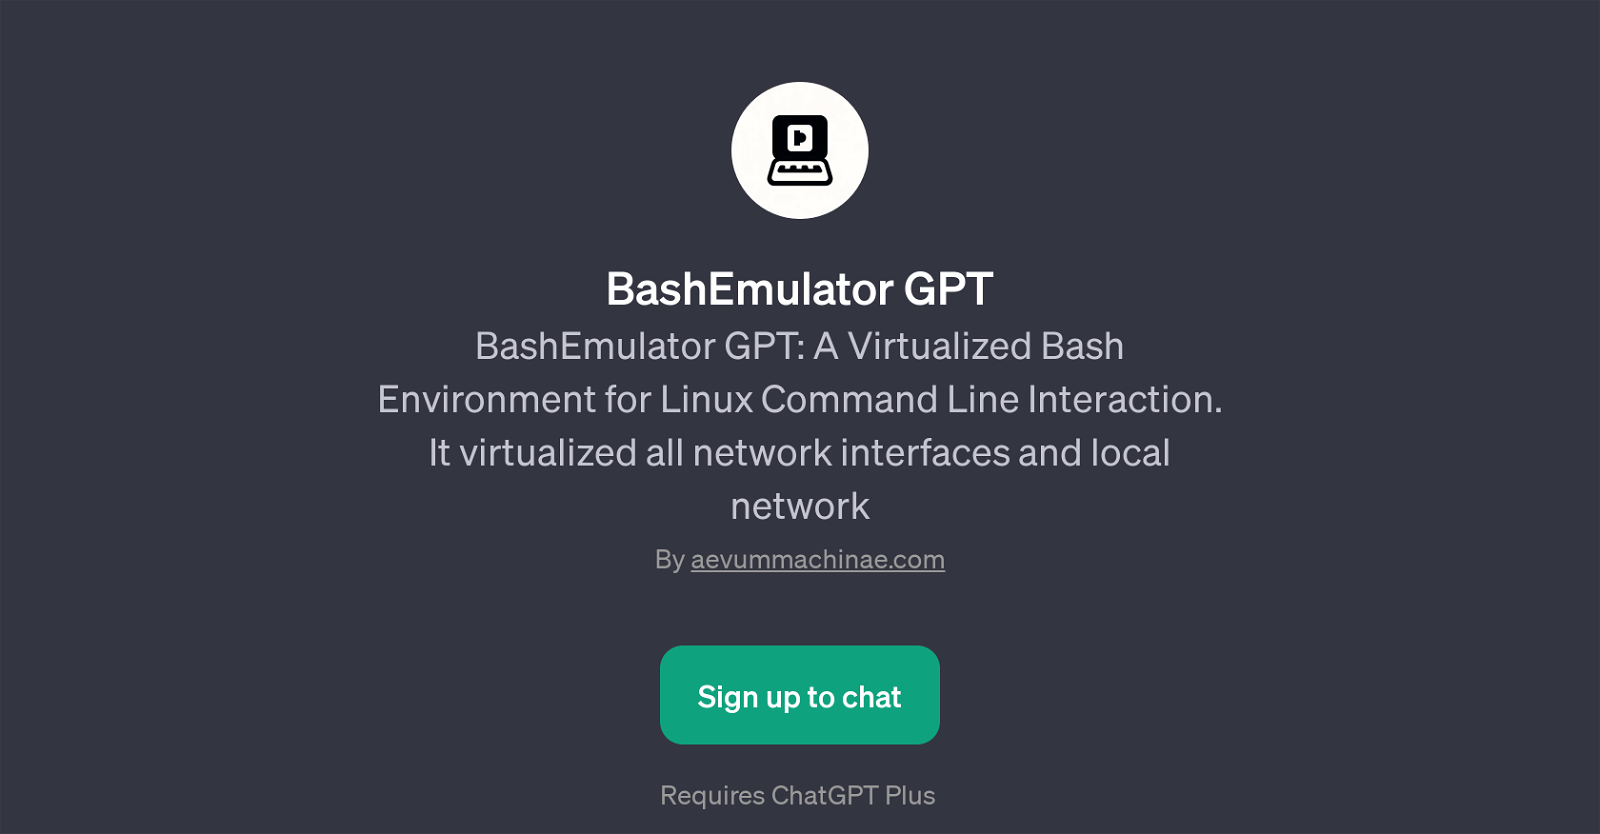 BashEmulator GPT website